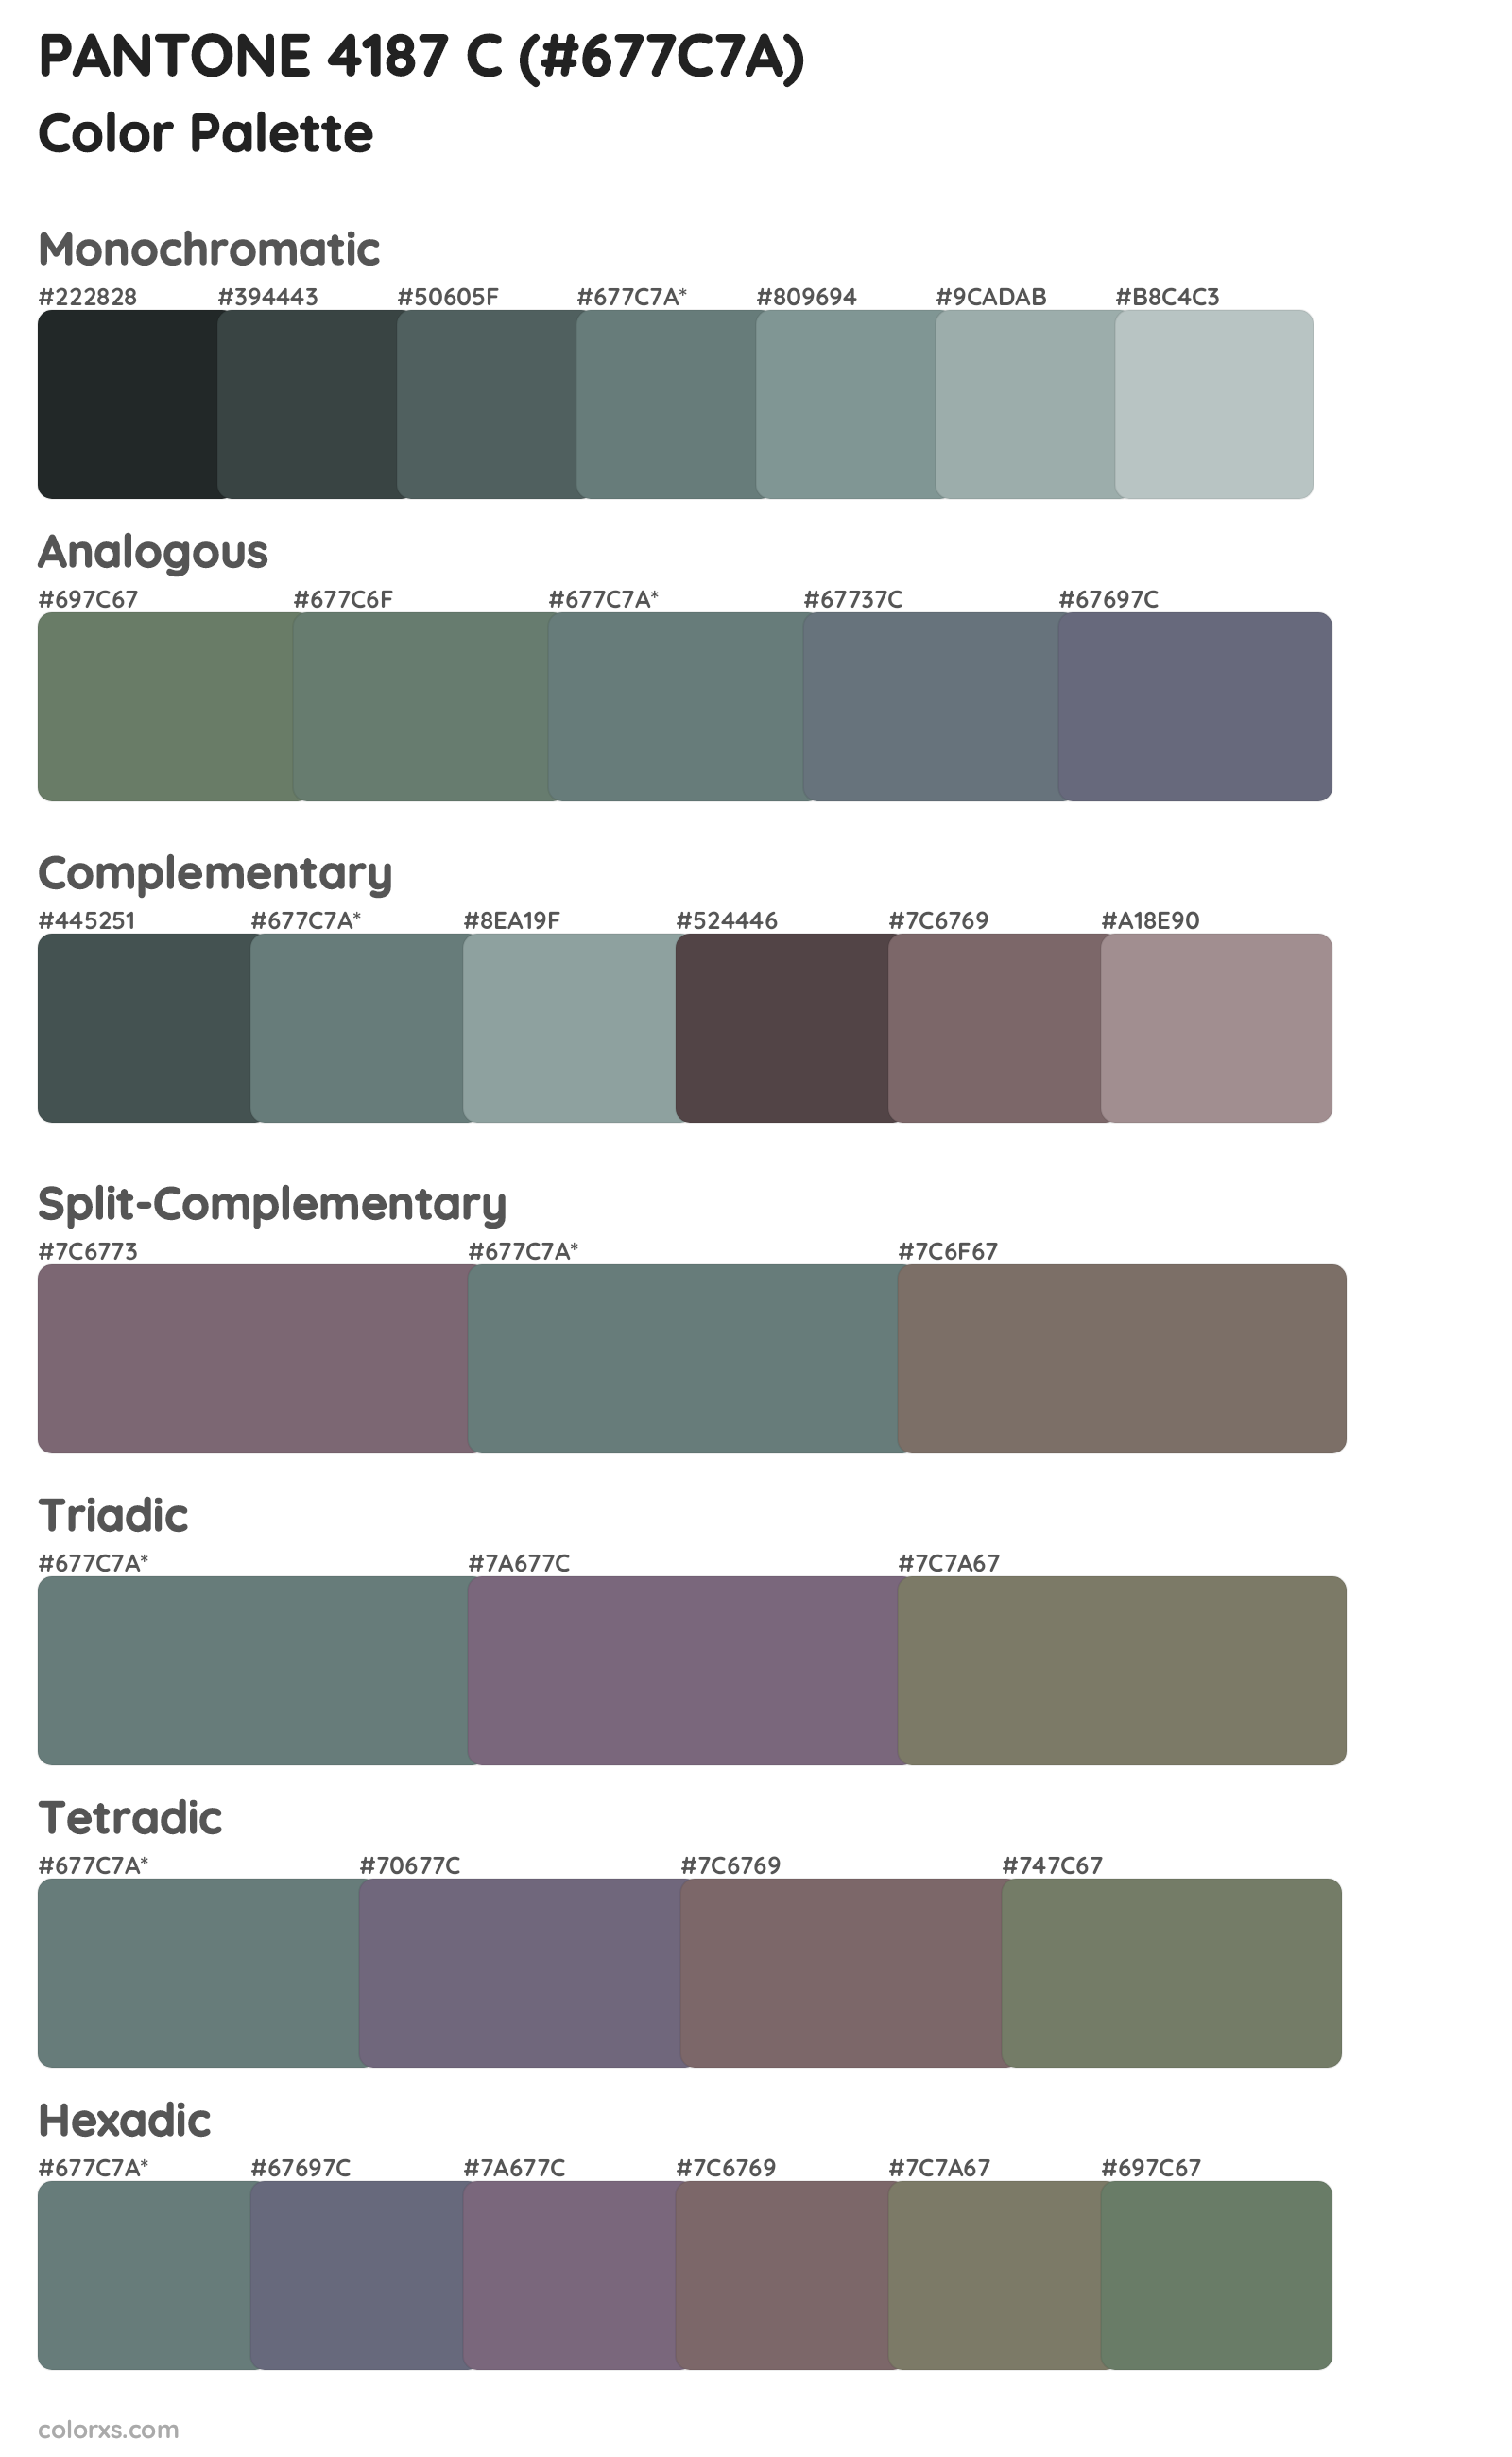 PANTONE 4187 C Color Scheme Palettes